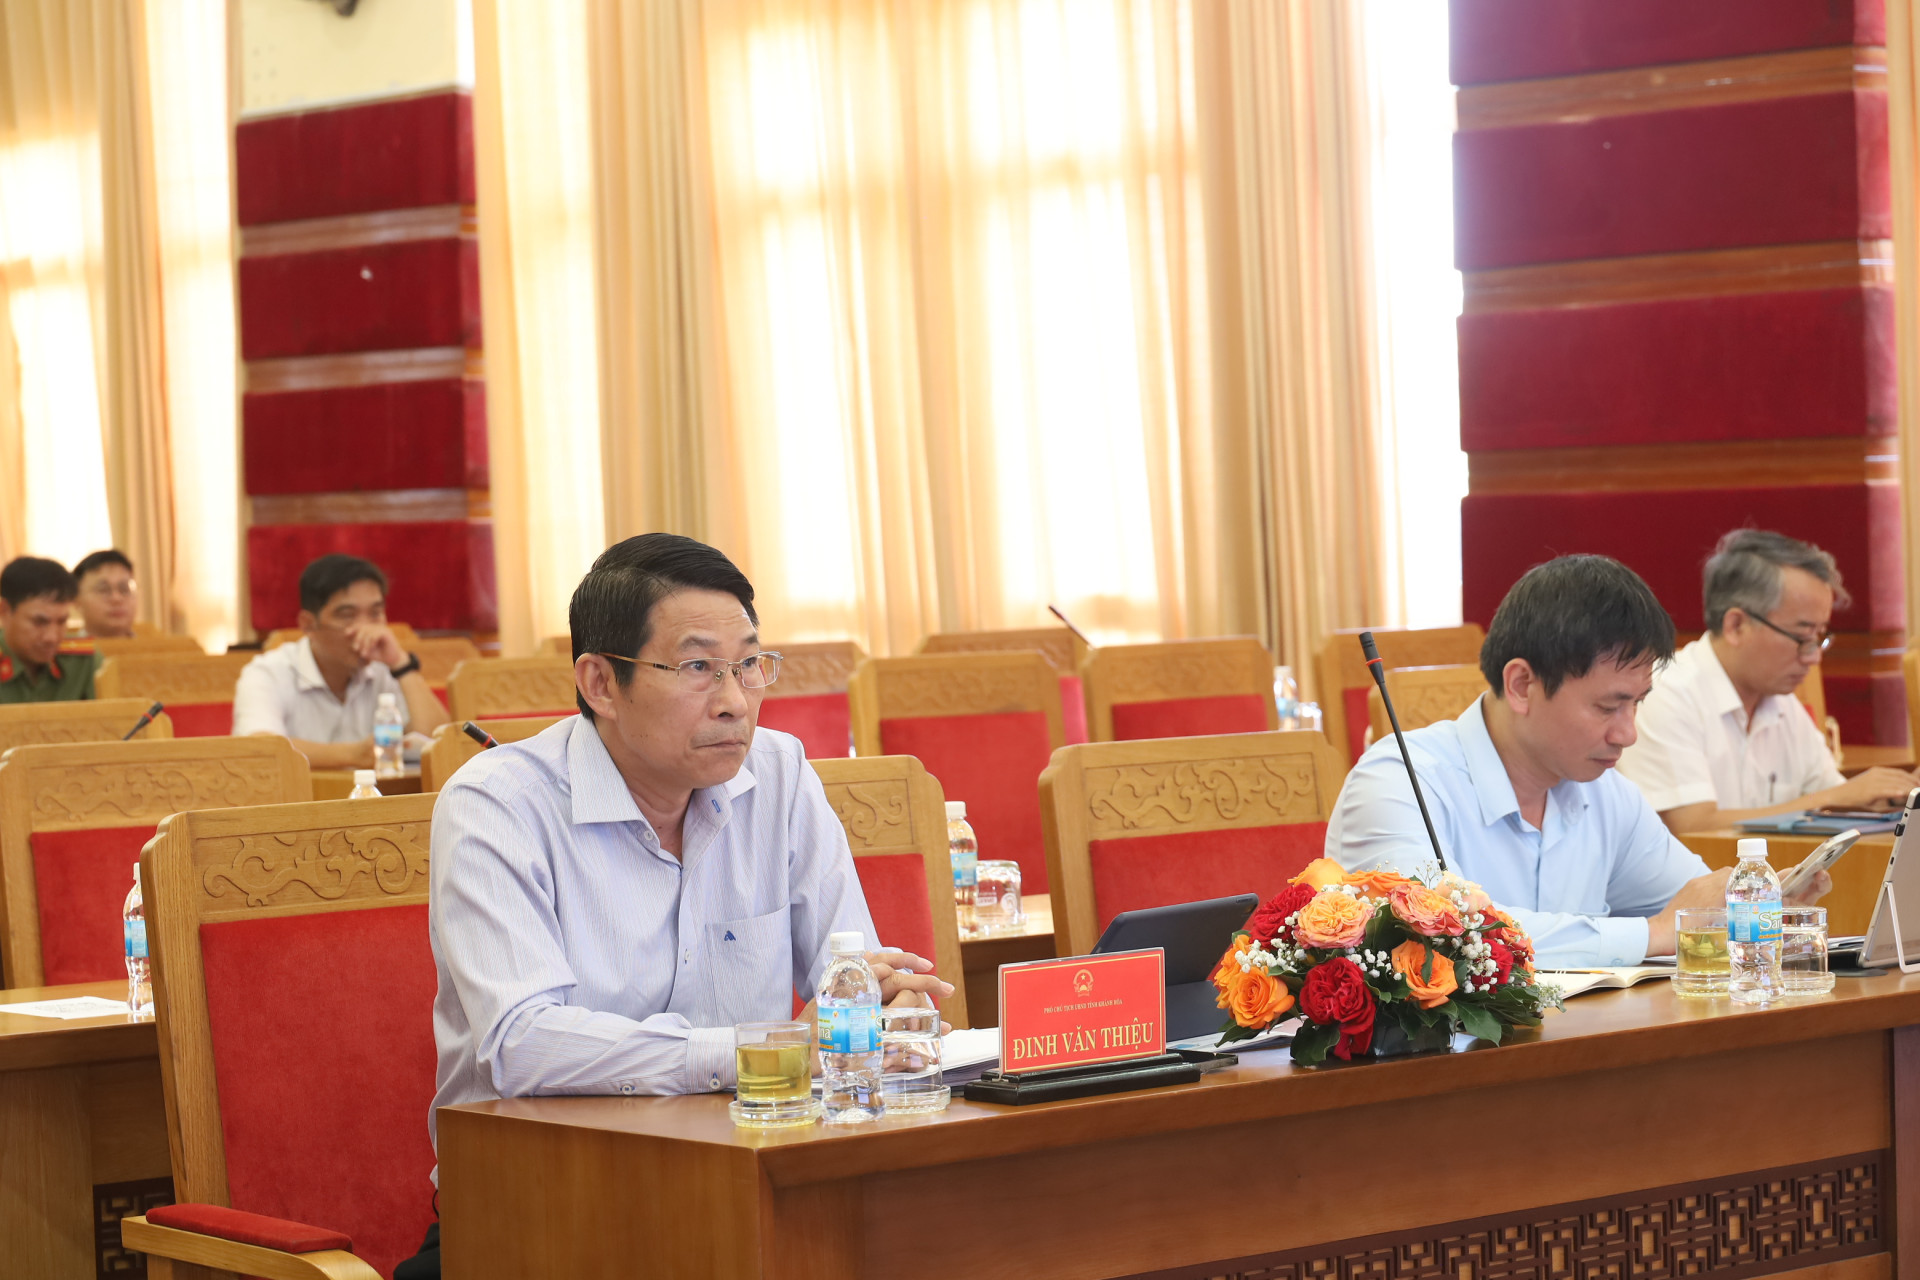 Đồng chí Đinh Văn Thiệu tham dự cuộc họp từ điểm cầu tỉnh Khánh Hòa.

